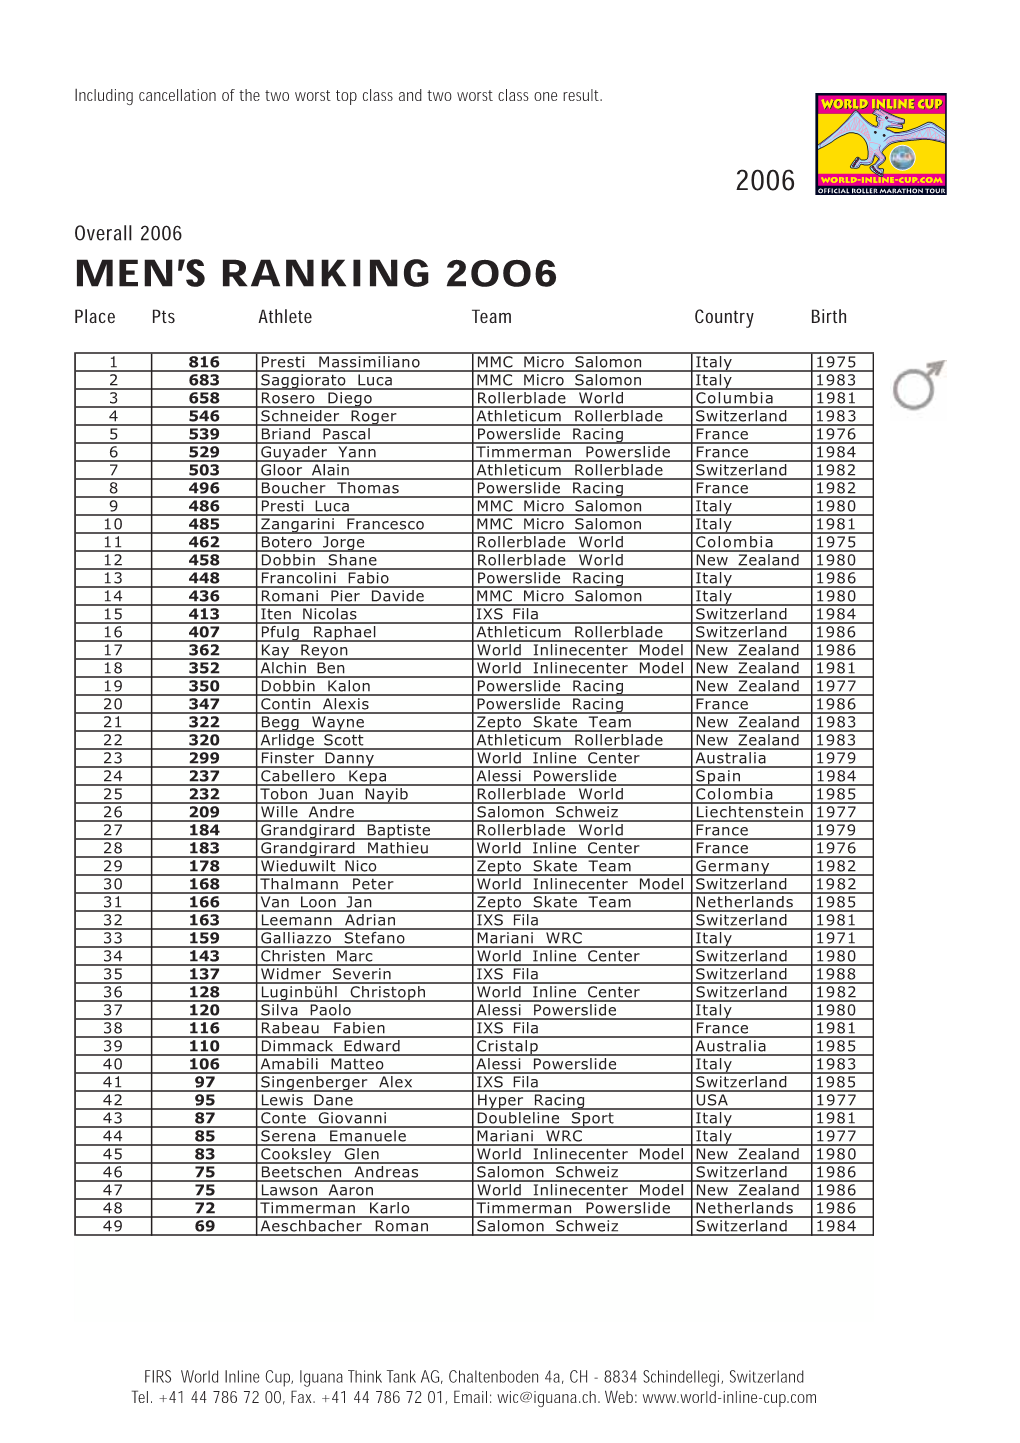 Men's Ranking 2006